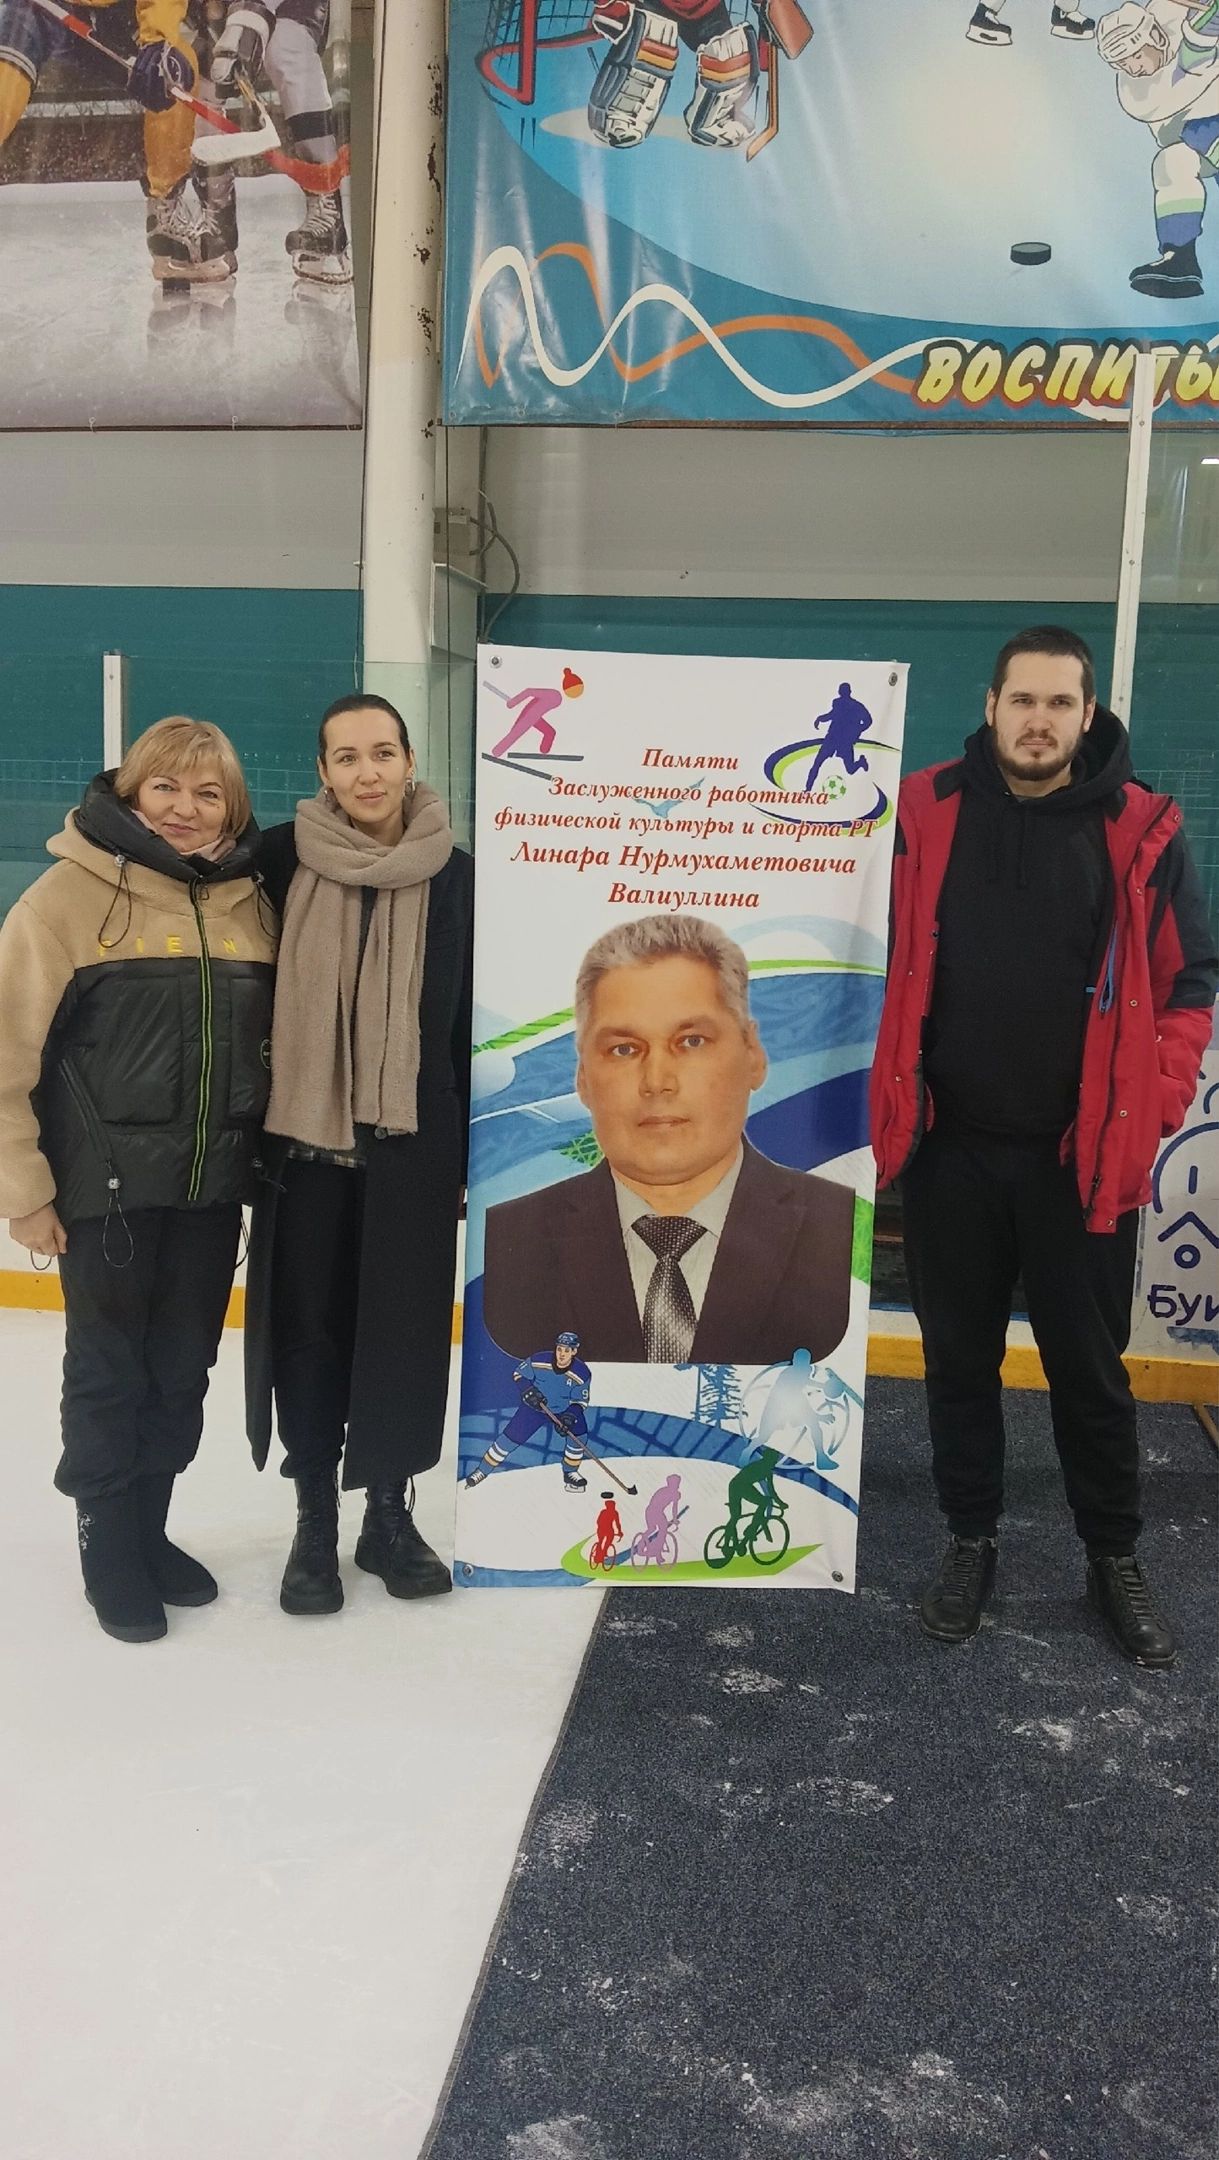 Сегодня в Буинске матчем  по хоккею почтили память Линара Валиуллина его воспитанники и земляки (фоторепортаж)